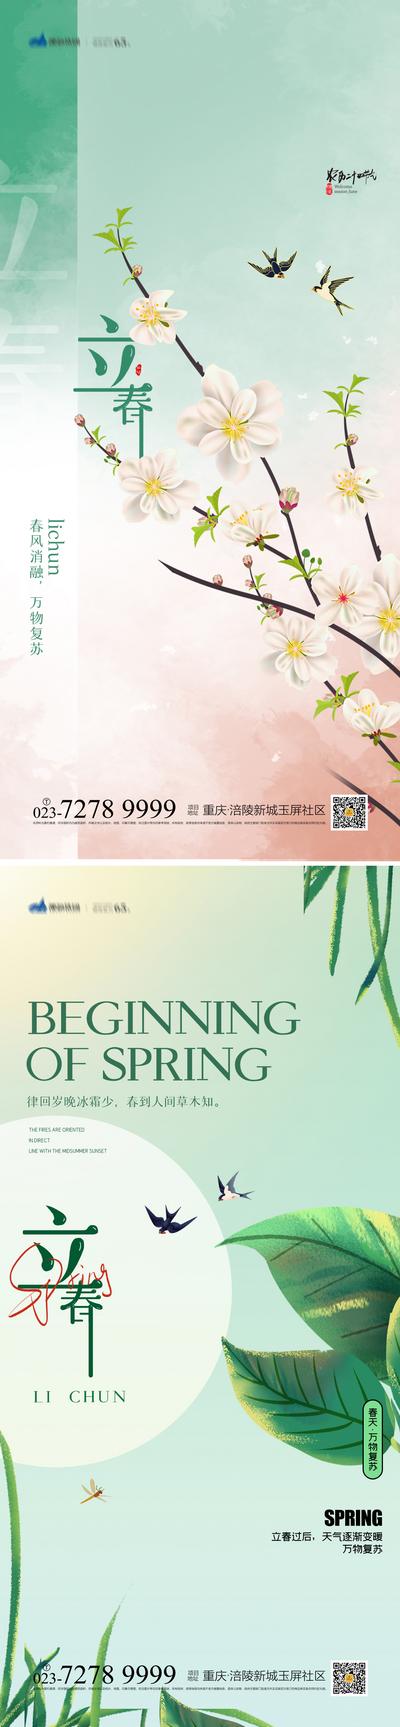 【南门网】海报   二十四节气 立春 春天  鸟语花香 桃花 燕子 景色  系列